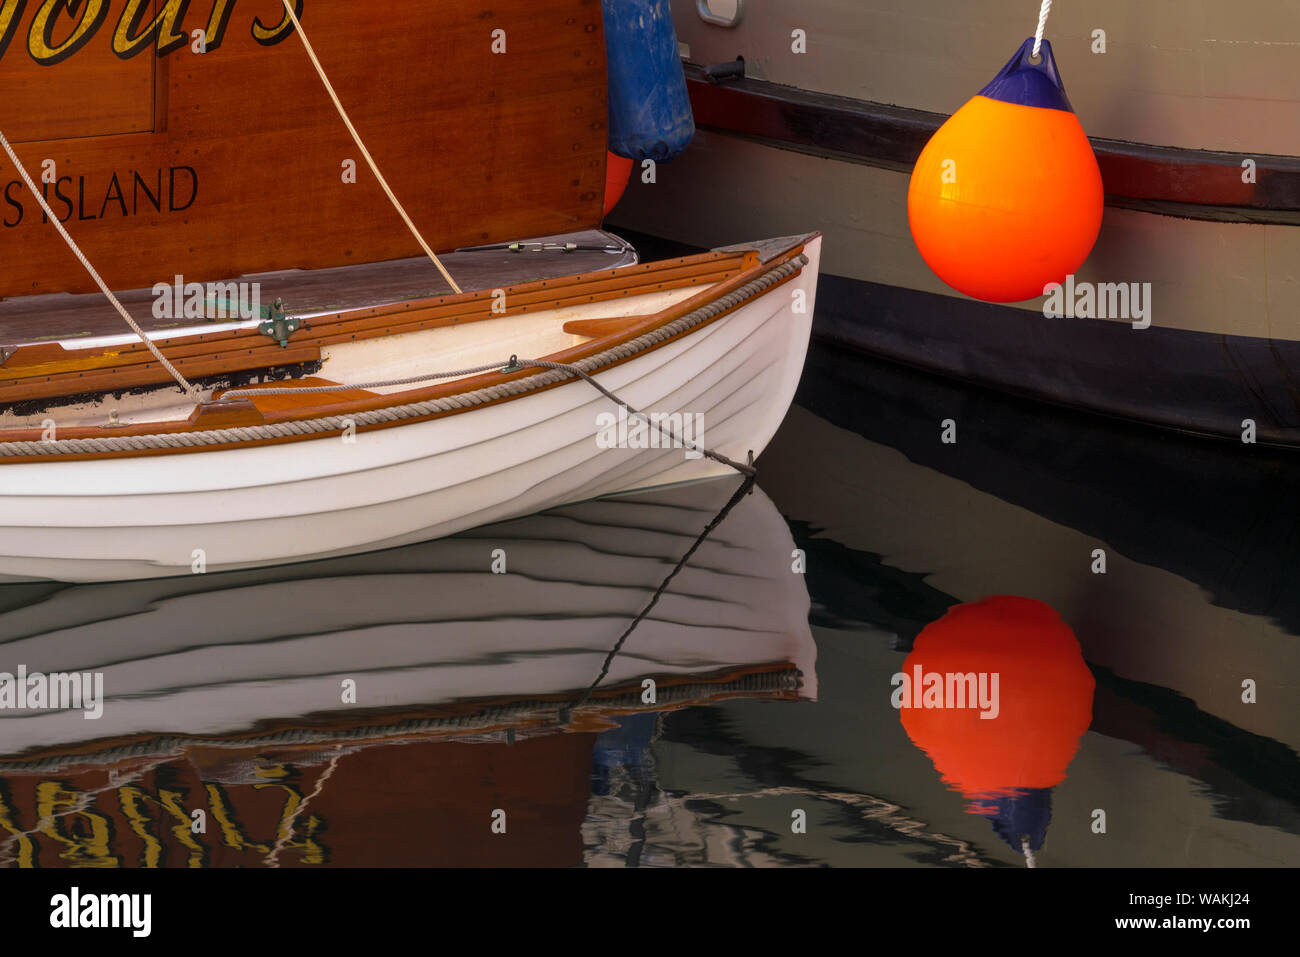 Stati Uniti d'America, nello Stato di Washington, Port Townsend. Barche in legno riflettono in porto. Credito come: Jim Nilsen Jaynes / Galleria / DanitaDelimont.com Foto Stock